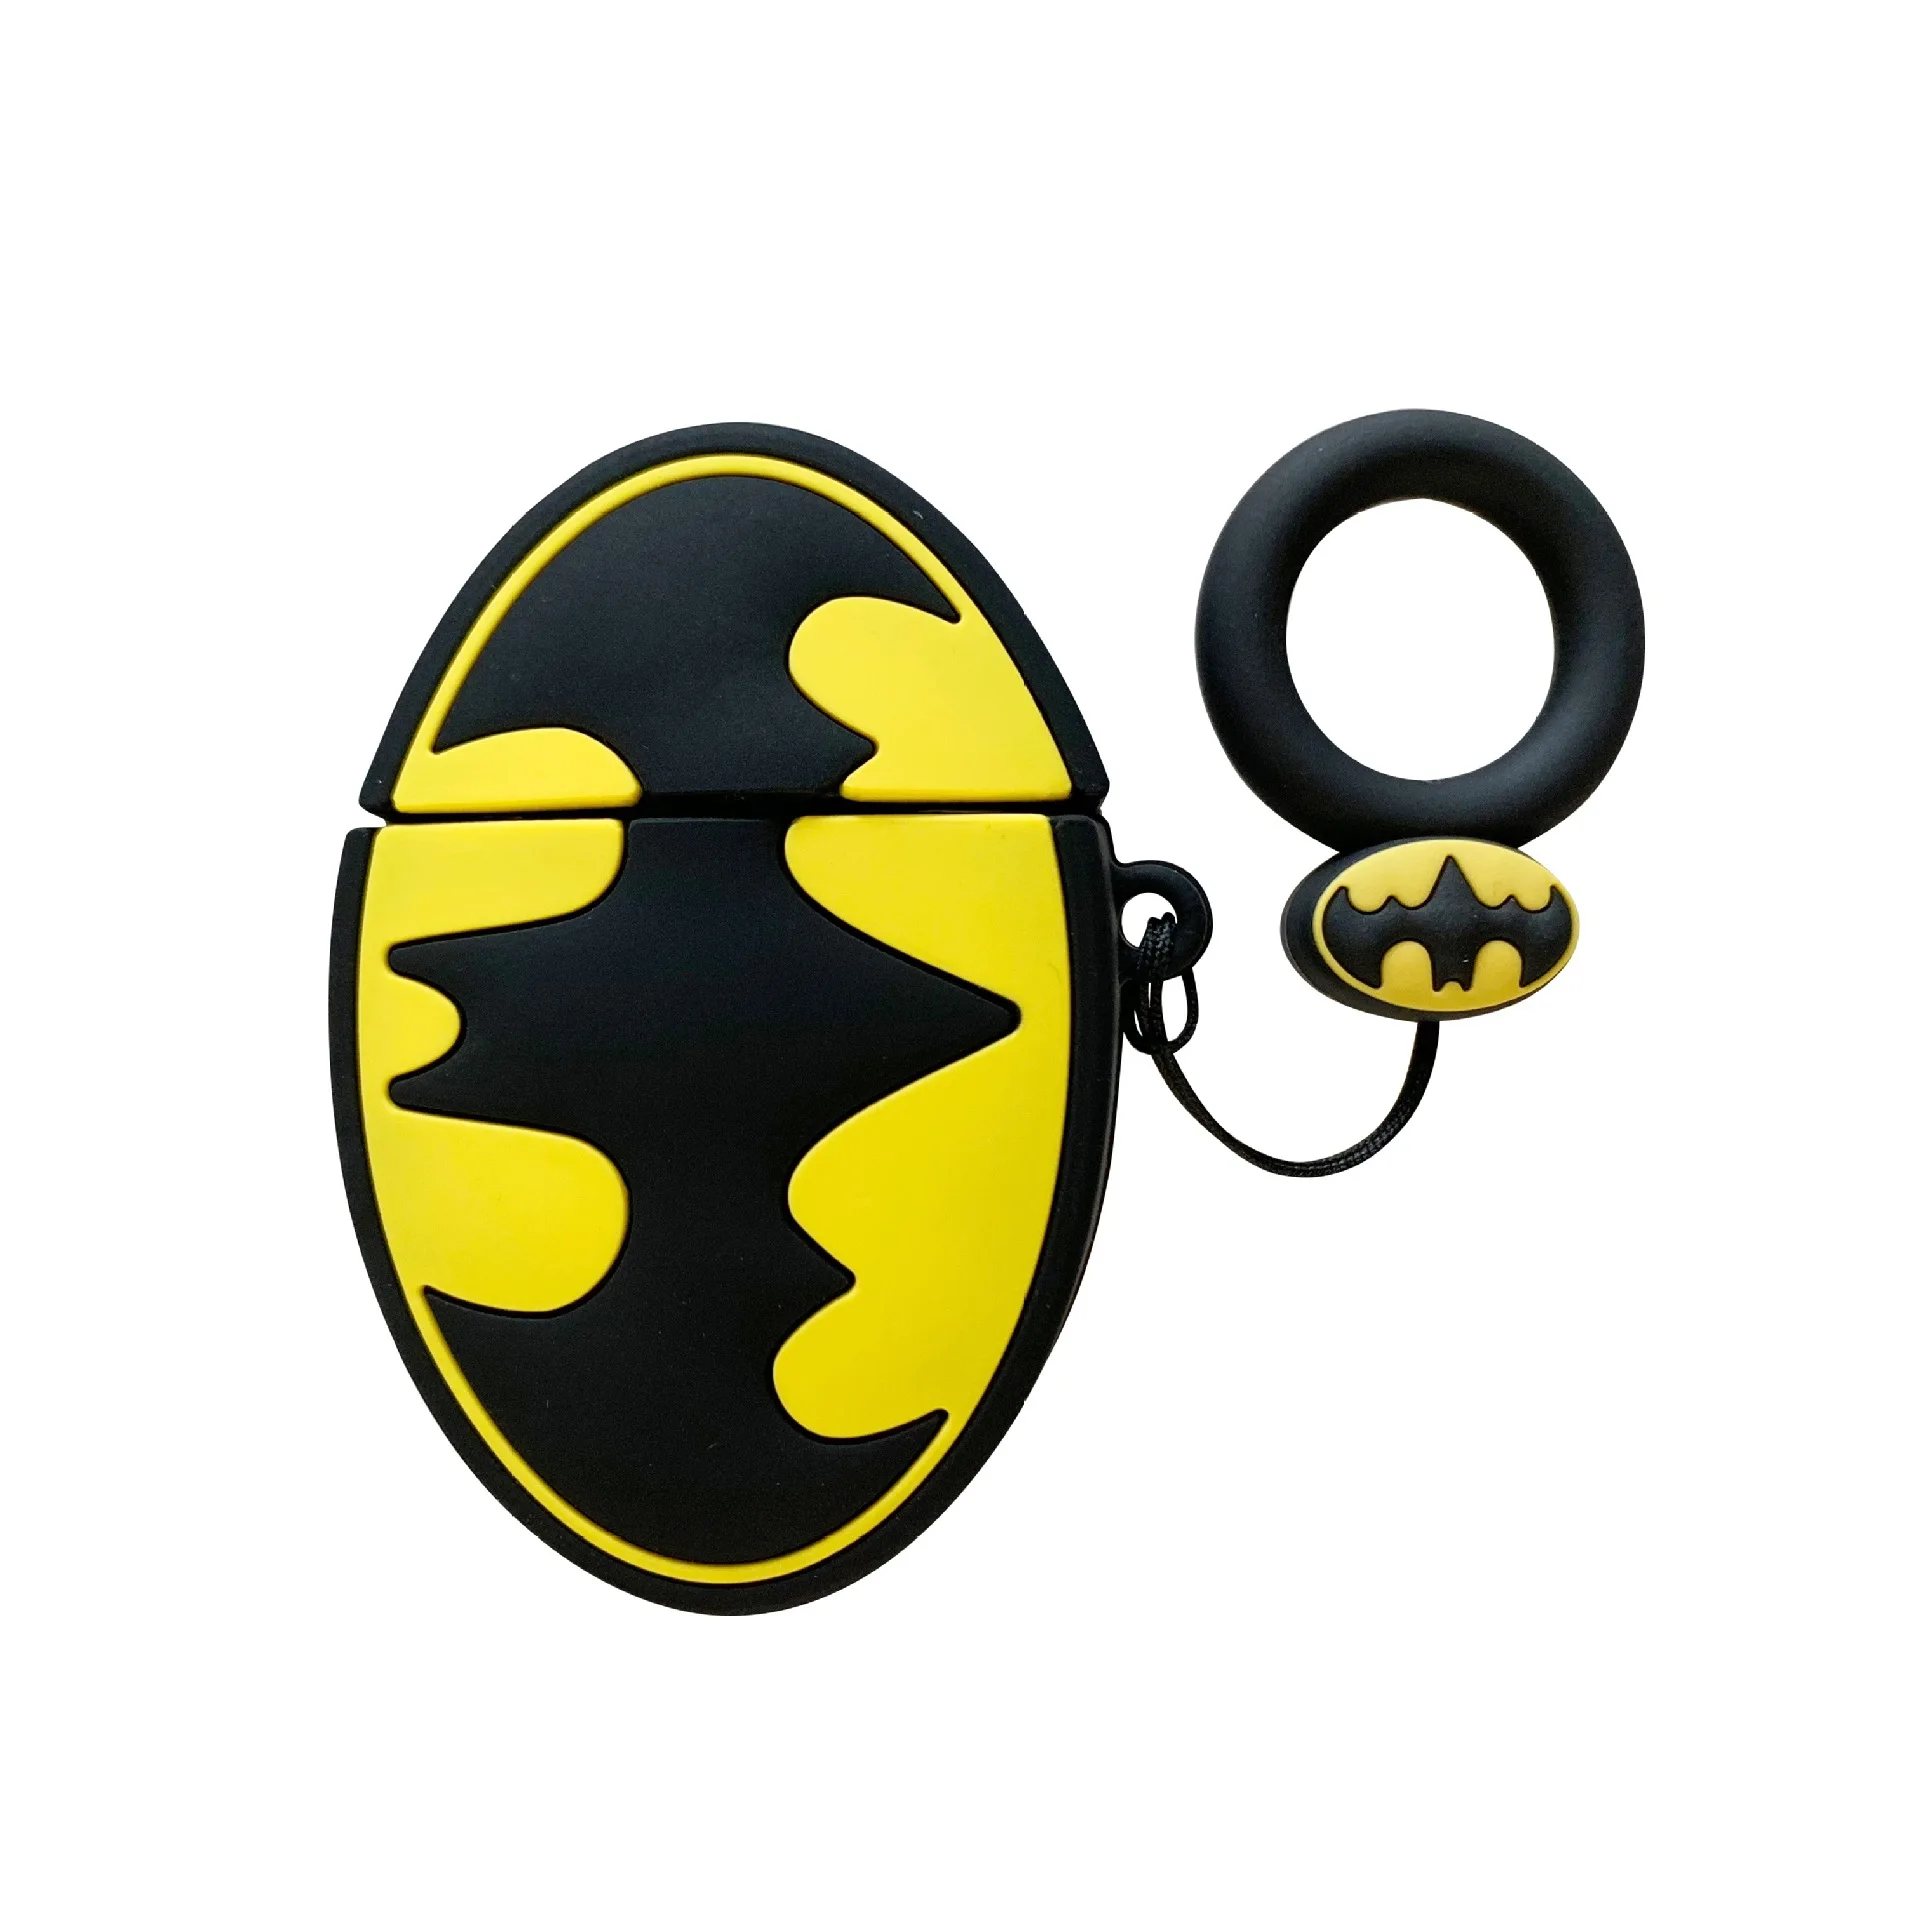 Бэтмен Капитан Америка супергерой Мстители 3D силиконовый ремешок чехол для Bluetooth наушники аксессуары защитный чехол - Цвет: A